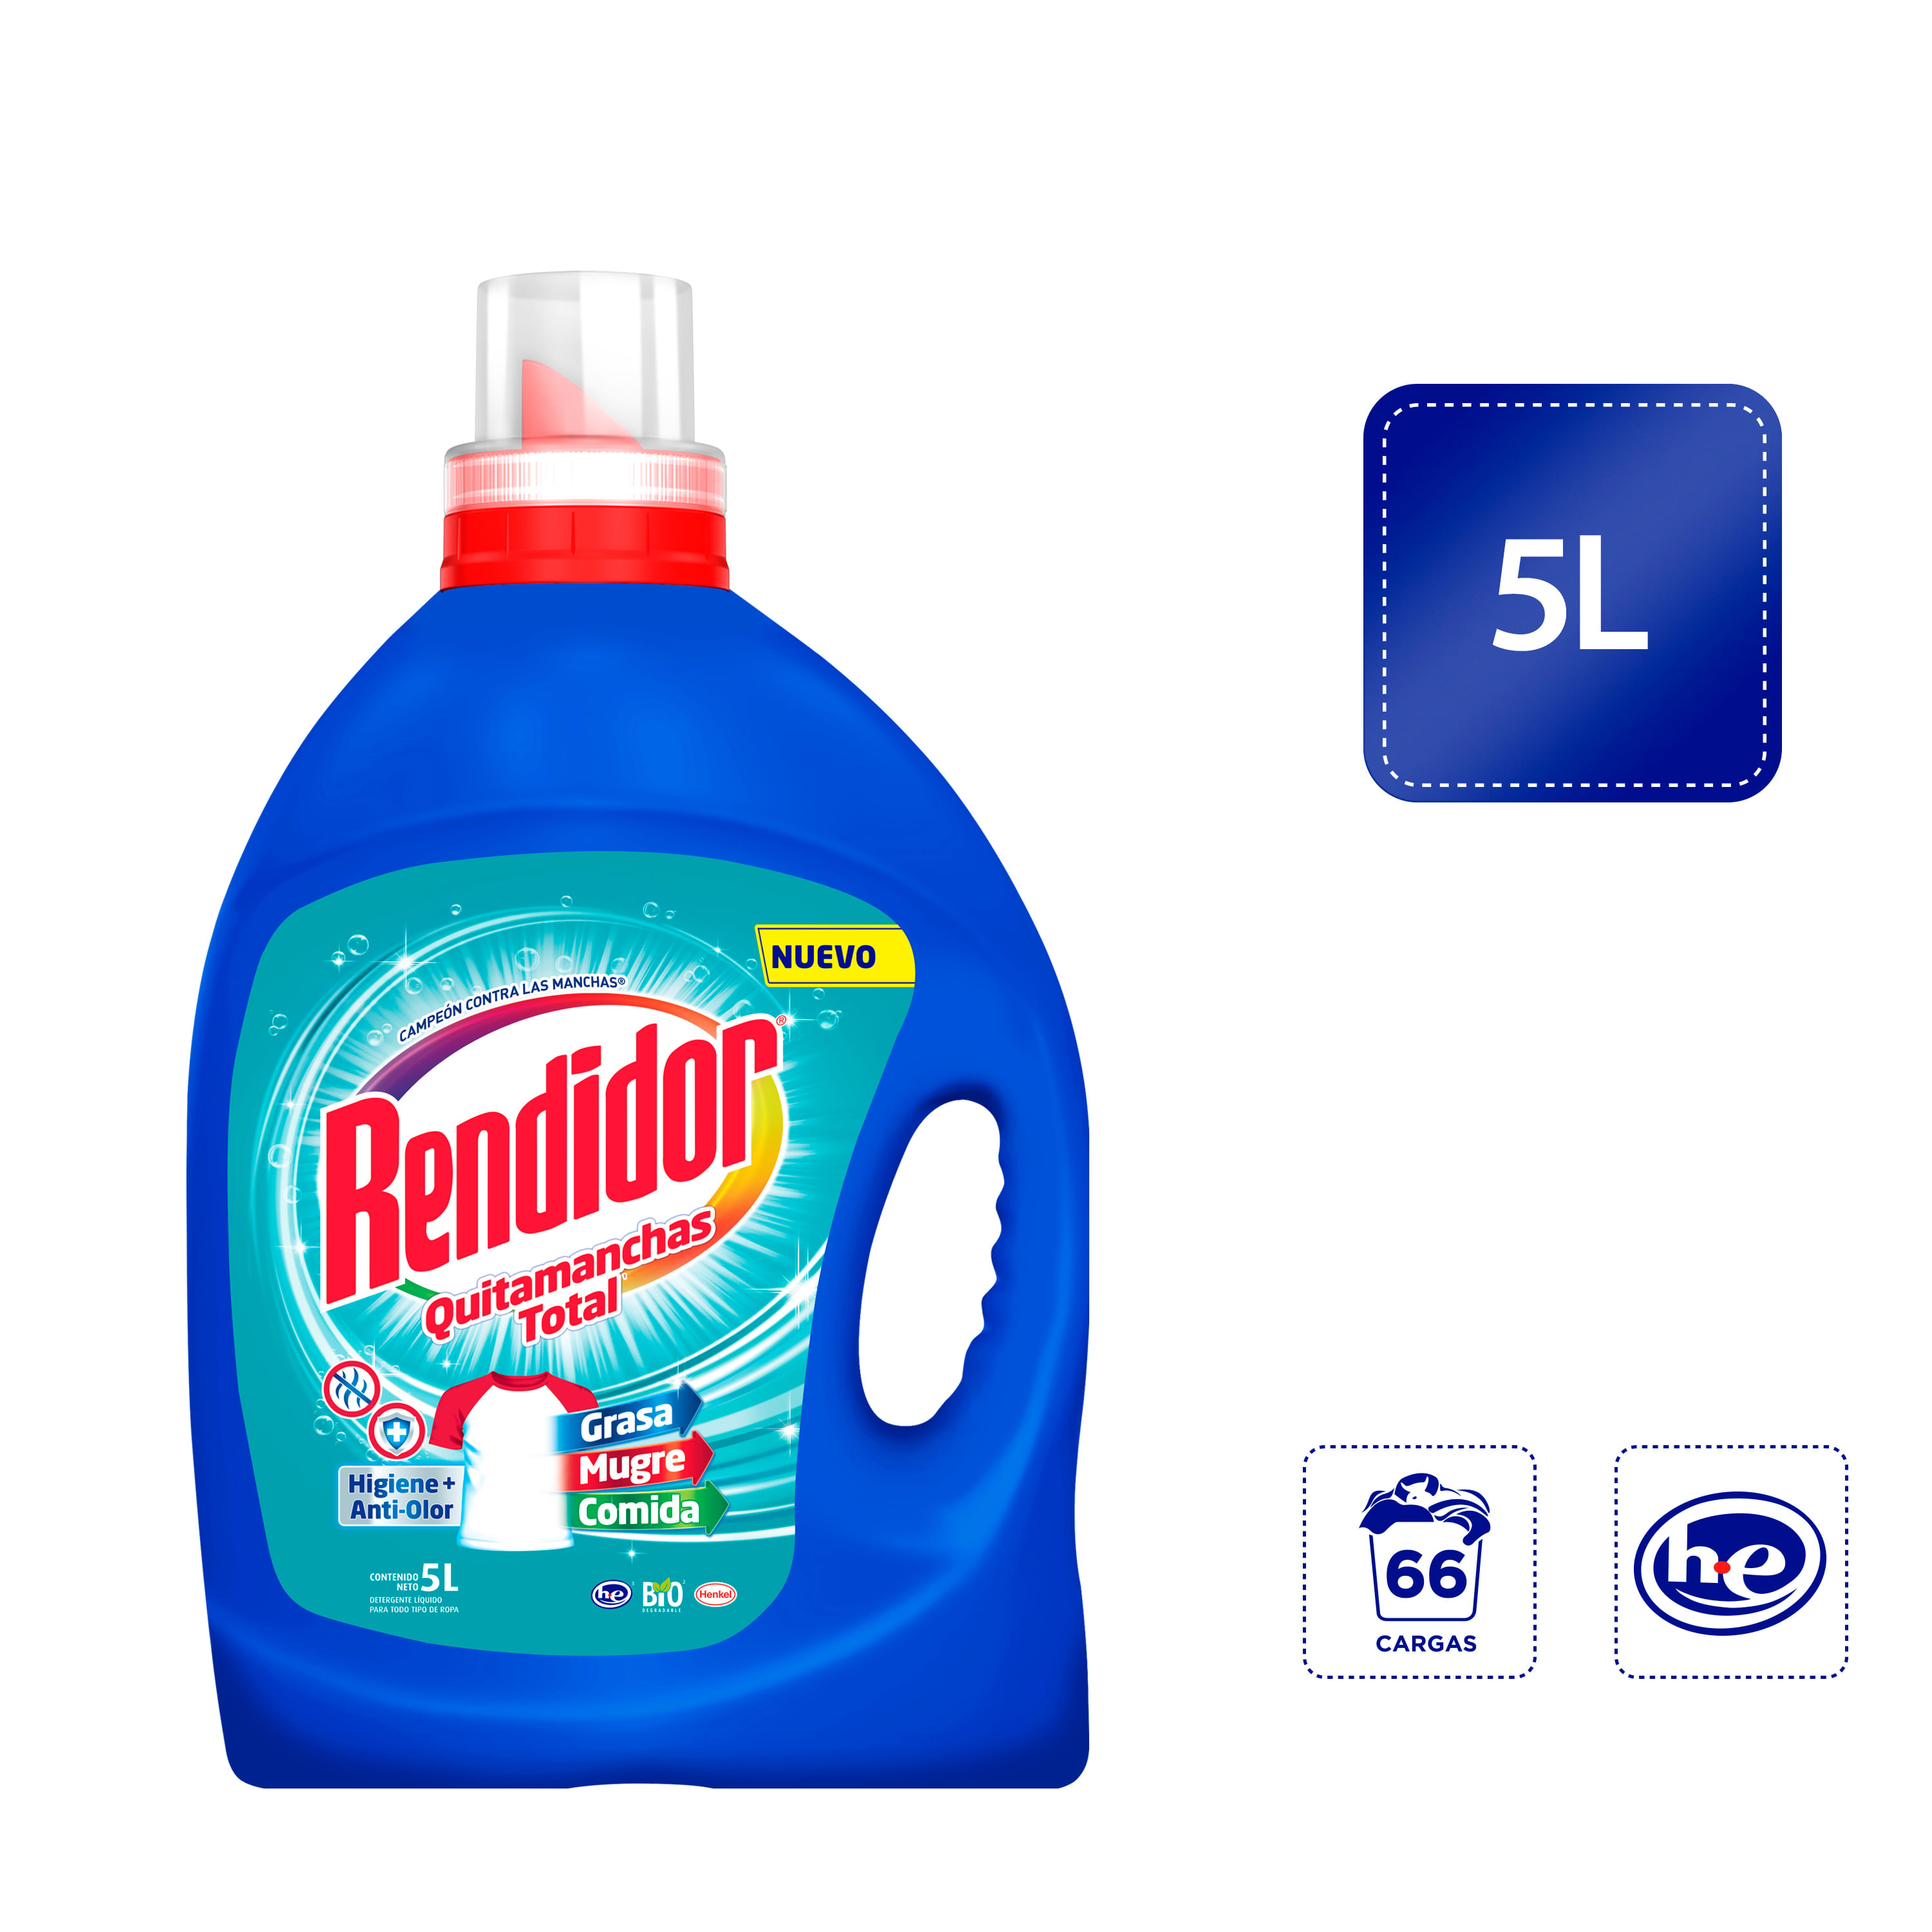 Mr. Home Absorbente Humedad 5 Unidades / 420 g, Productos de limpieza, Pricesmart, Barranquilla